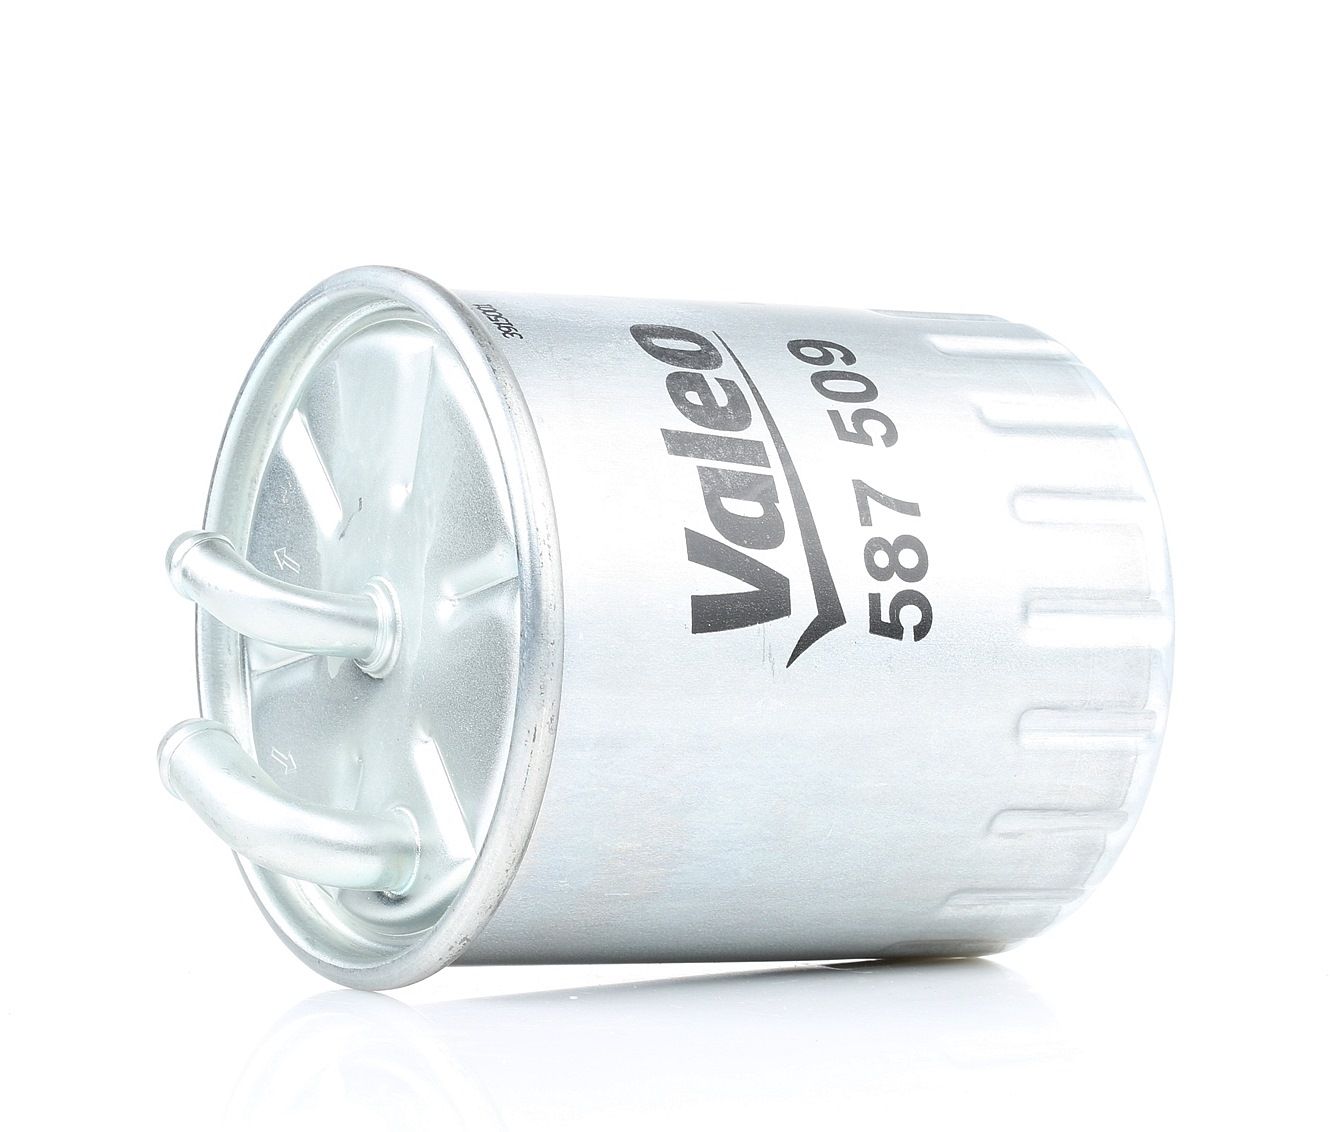 Palivový filtr 587509 s vynikajícím poměrem mezi cenou a VALEO kvalitou